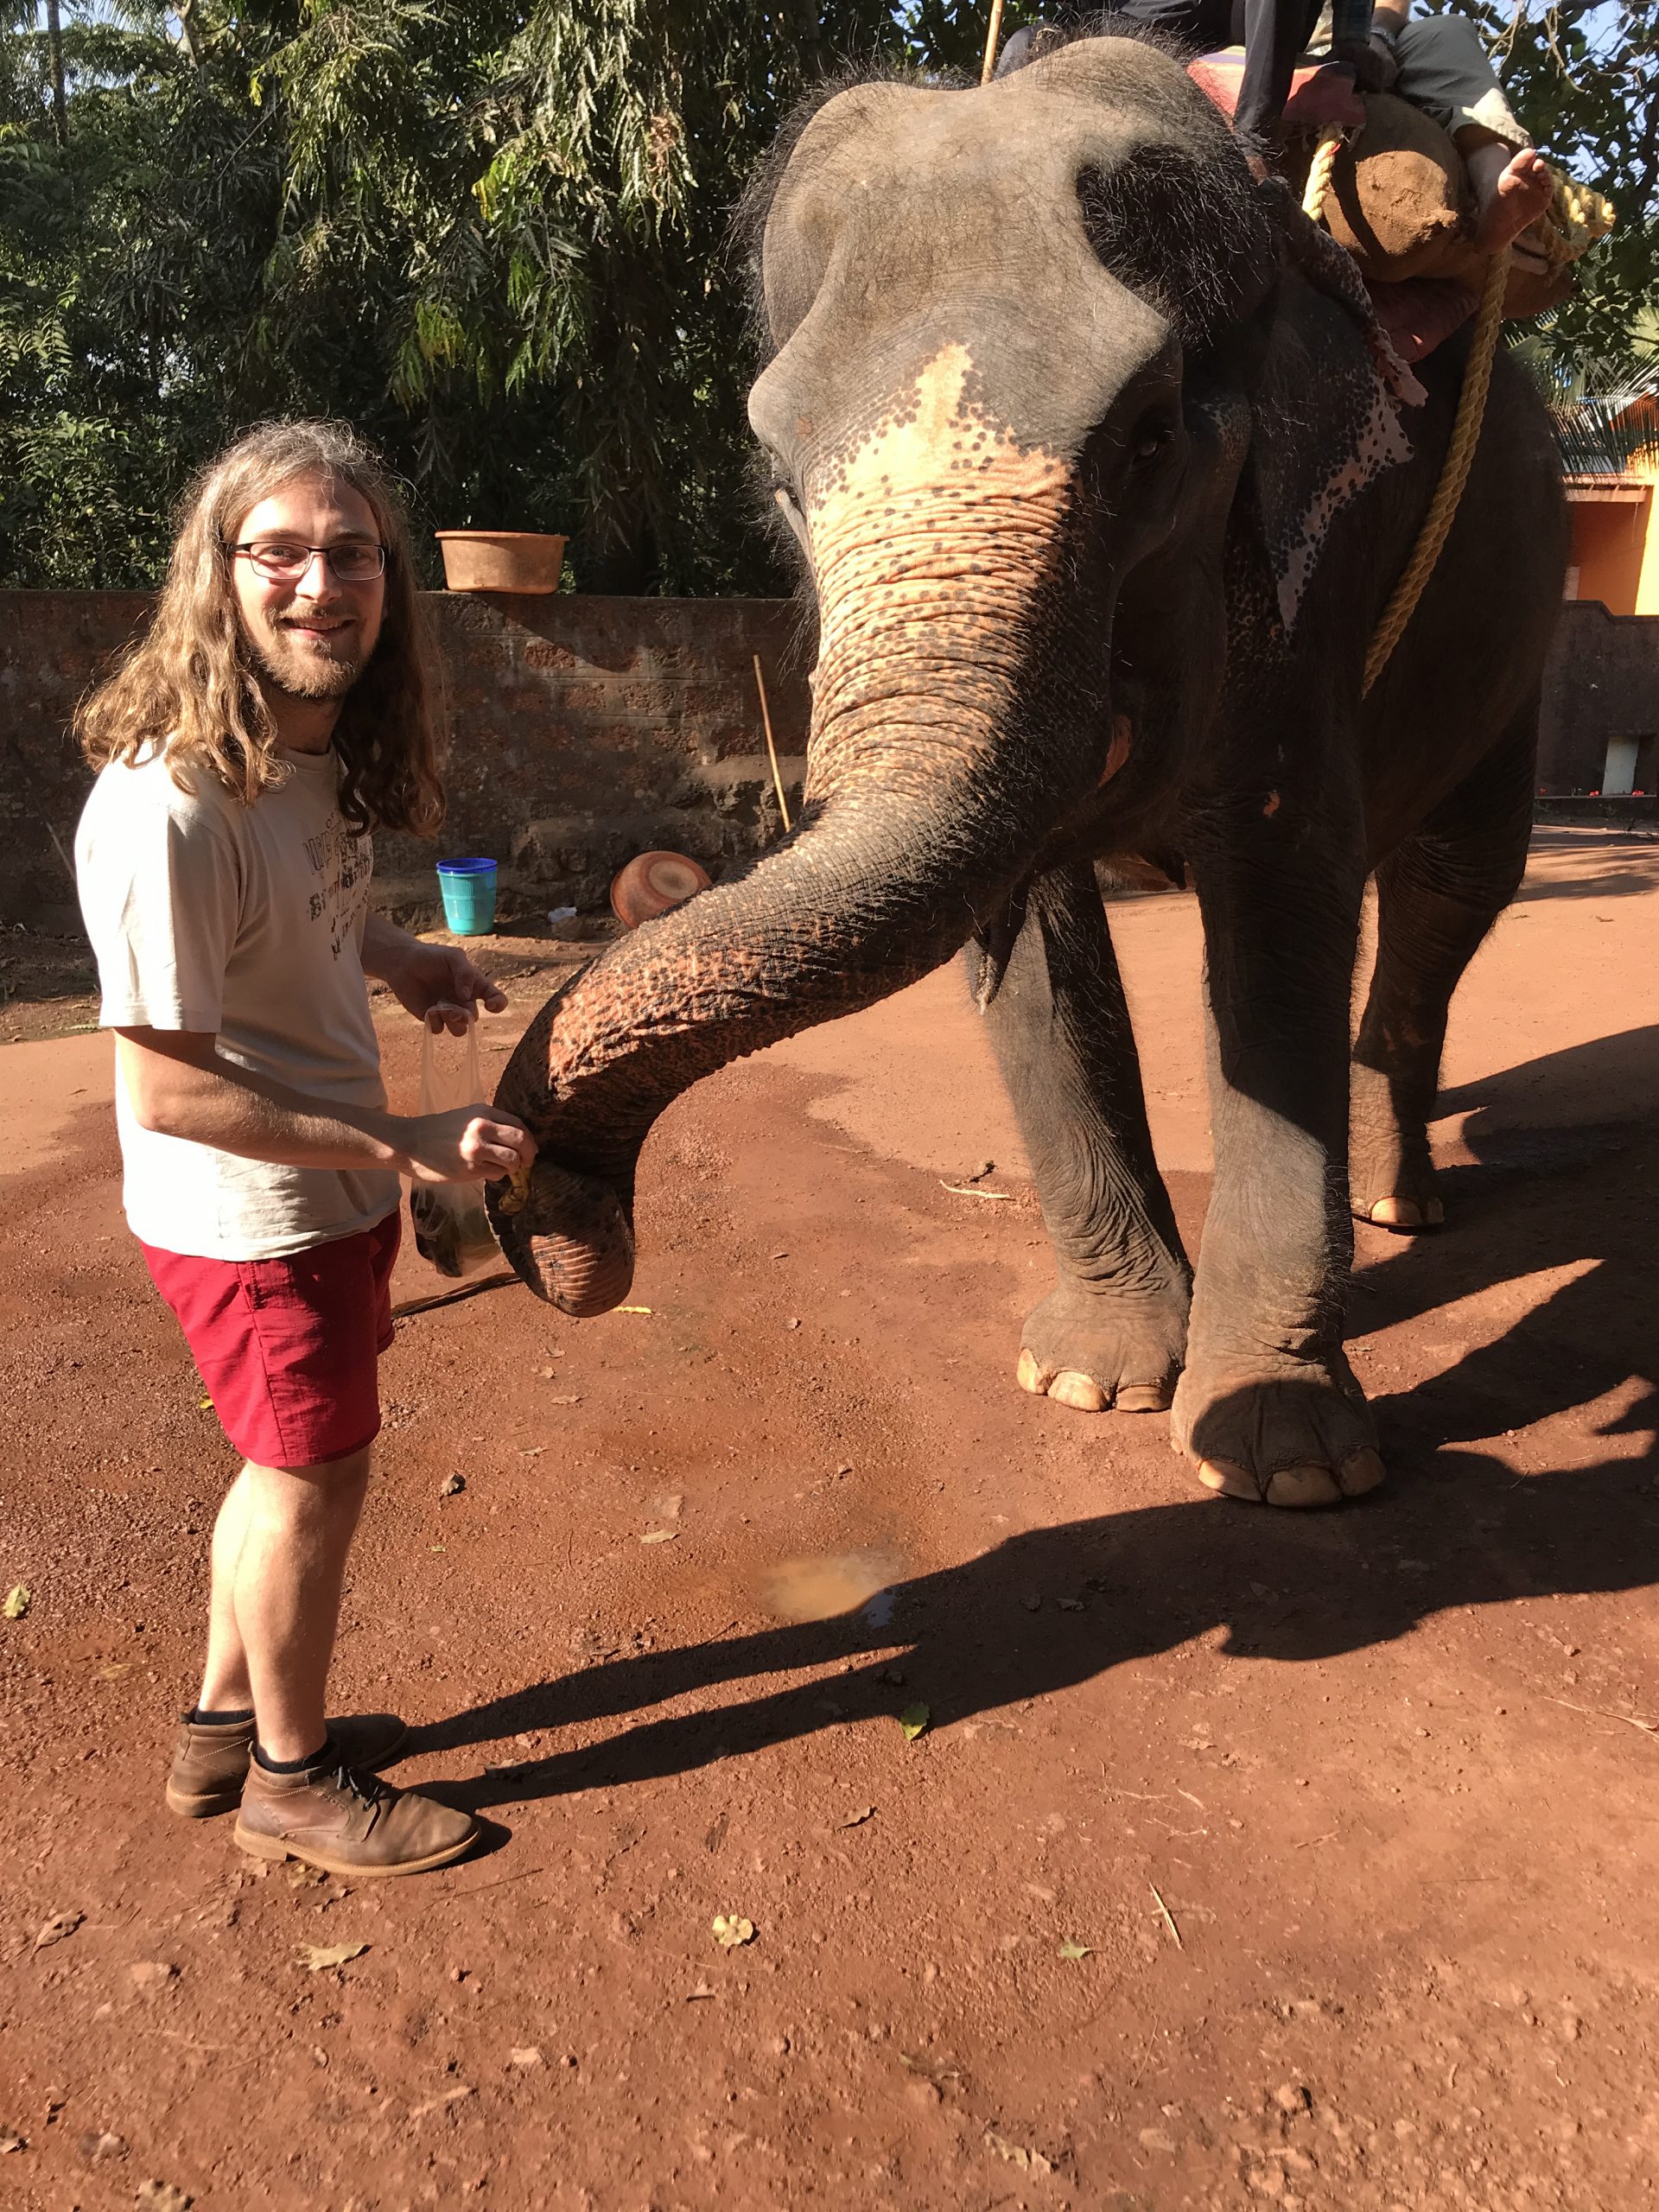 Felix feeding an elephant in Goa on NEw Year's eve